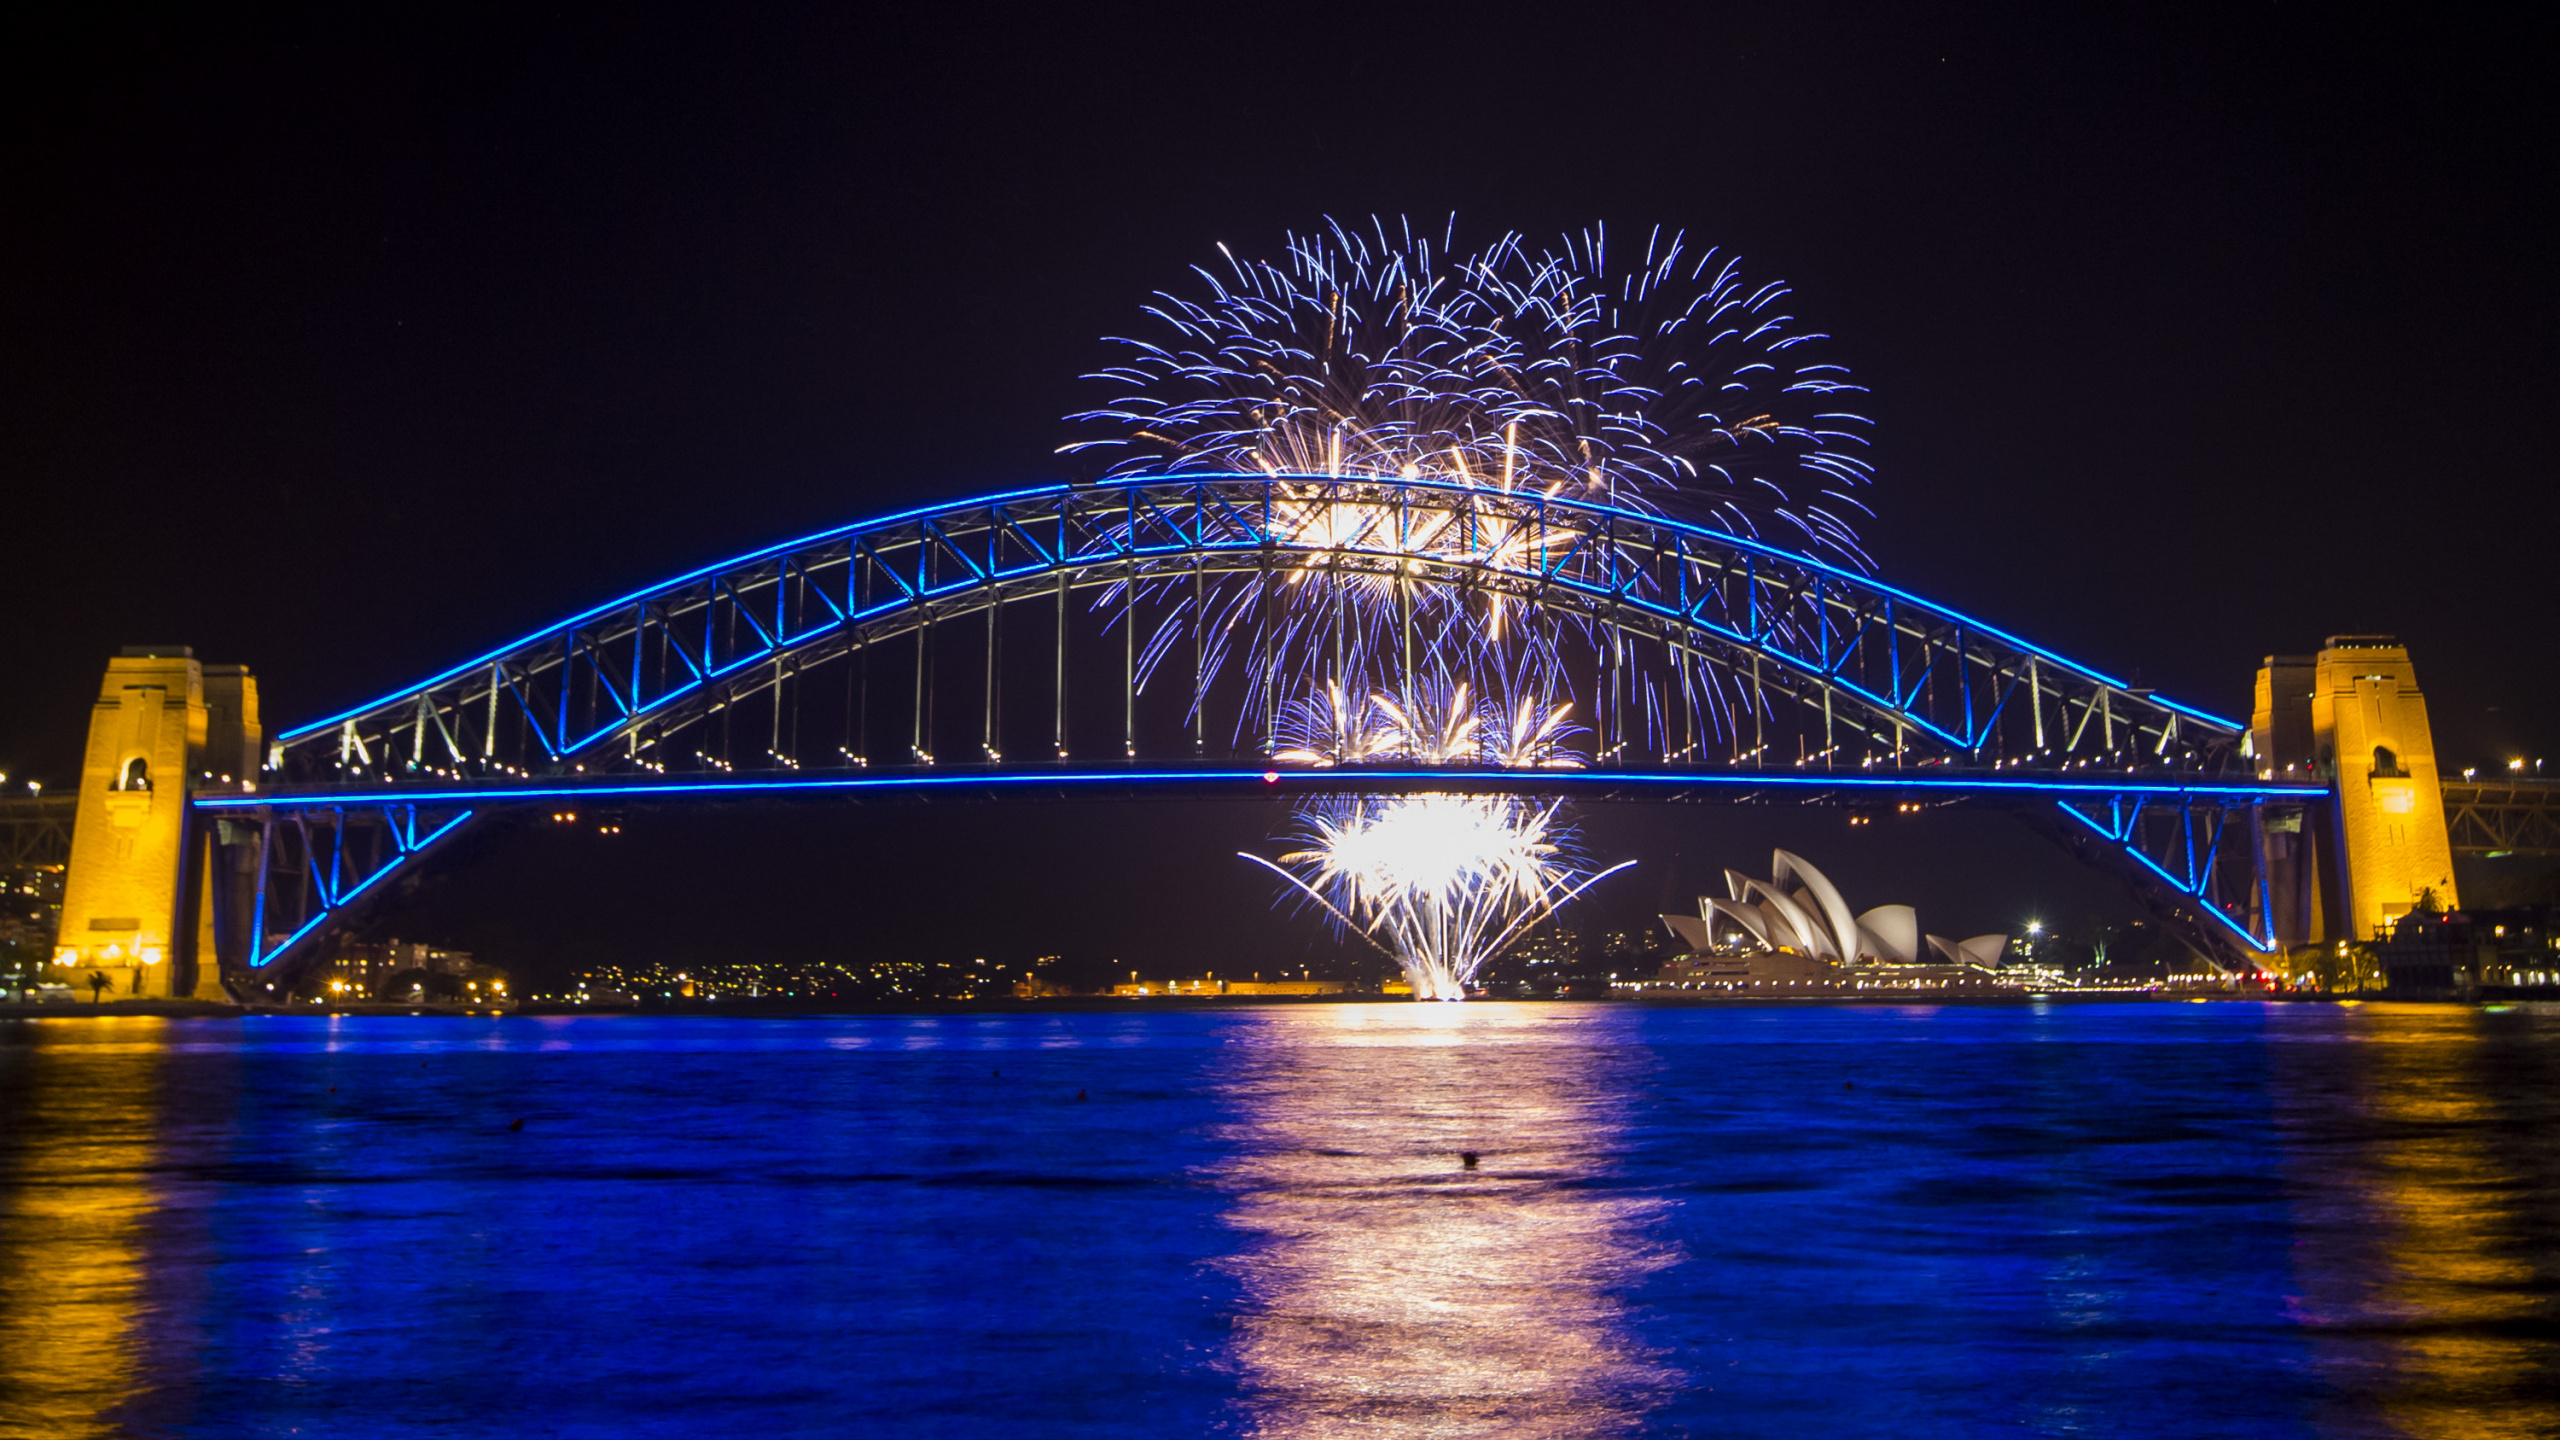 悉尼海港大桥, 悉尼歌剧院, 反射, 里程碑, 旅游景点 壁纸 2560x1440 允许